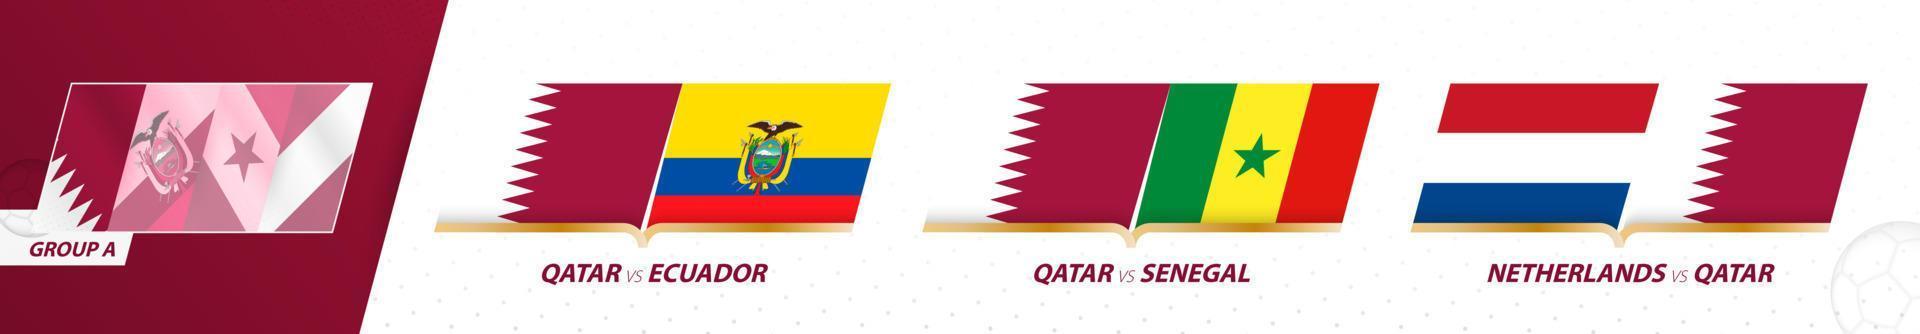 qatar Amerikaans voetbal team spellen in groep een van Internationale Amerikaans voetbal toernooi 2022. vector